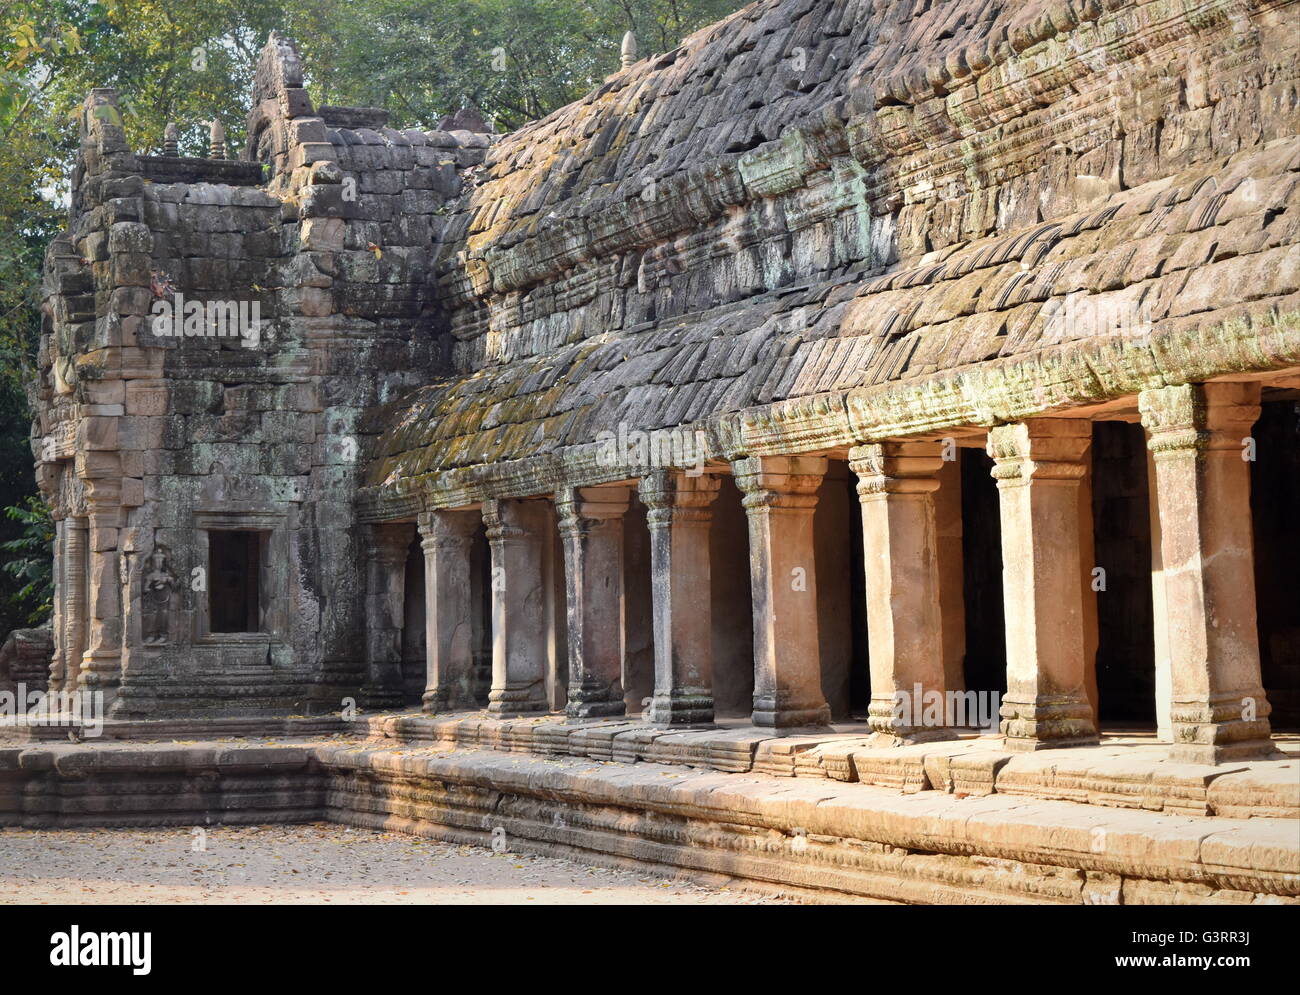 Ta Prohm temple bouddhiste ancienne colonnade en pierre - Cambodge Banque D'Images